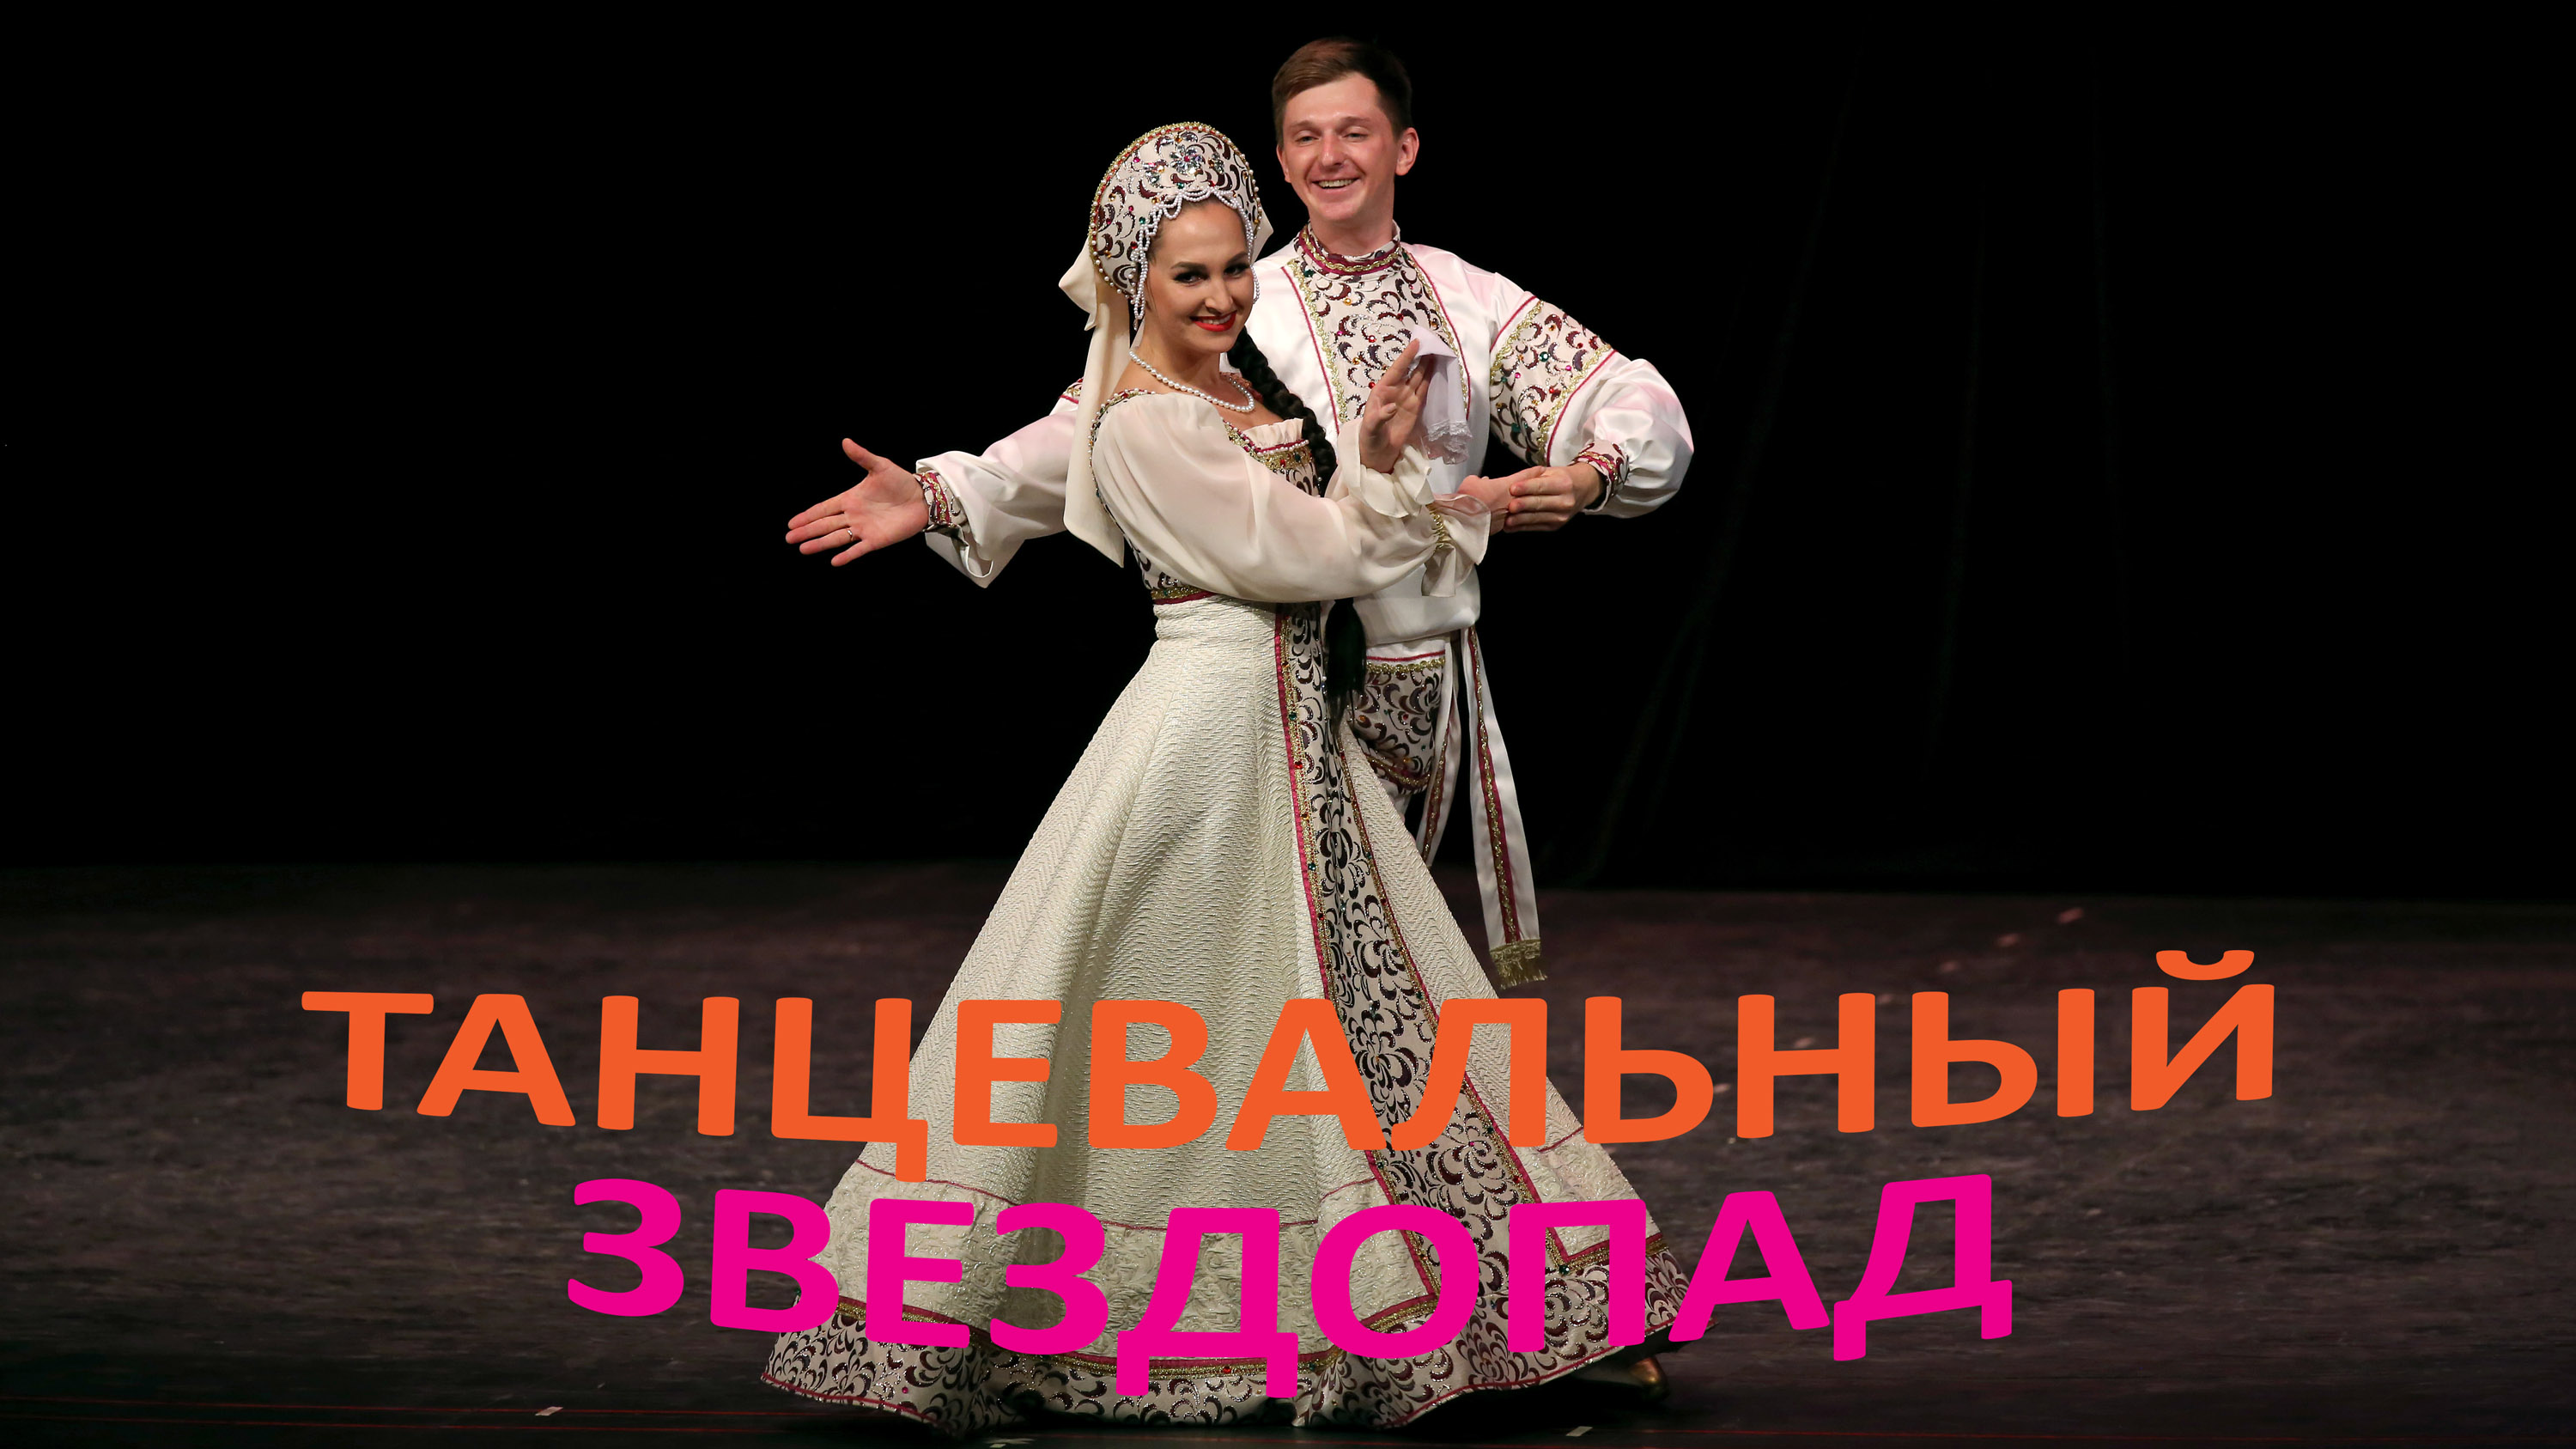 "Русский лирический", Ансамбль ФСБ России. "Russian Lyrical", Ensemble of the FSB of Russia.